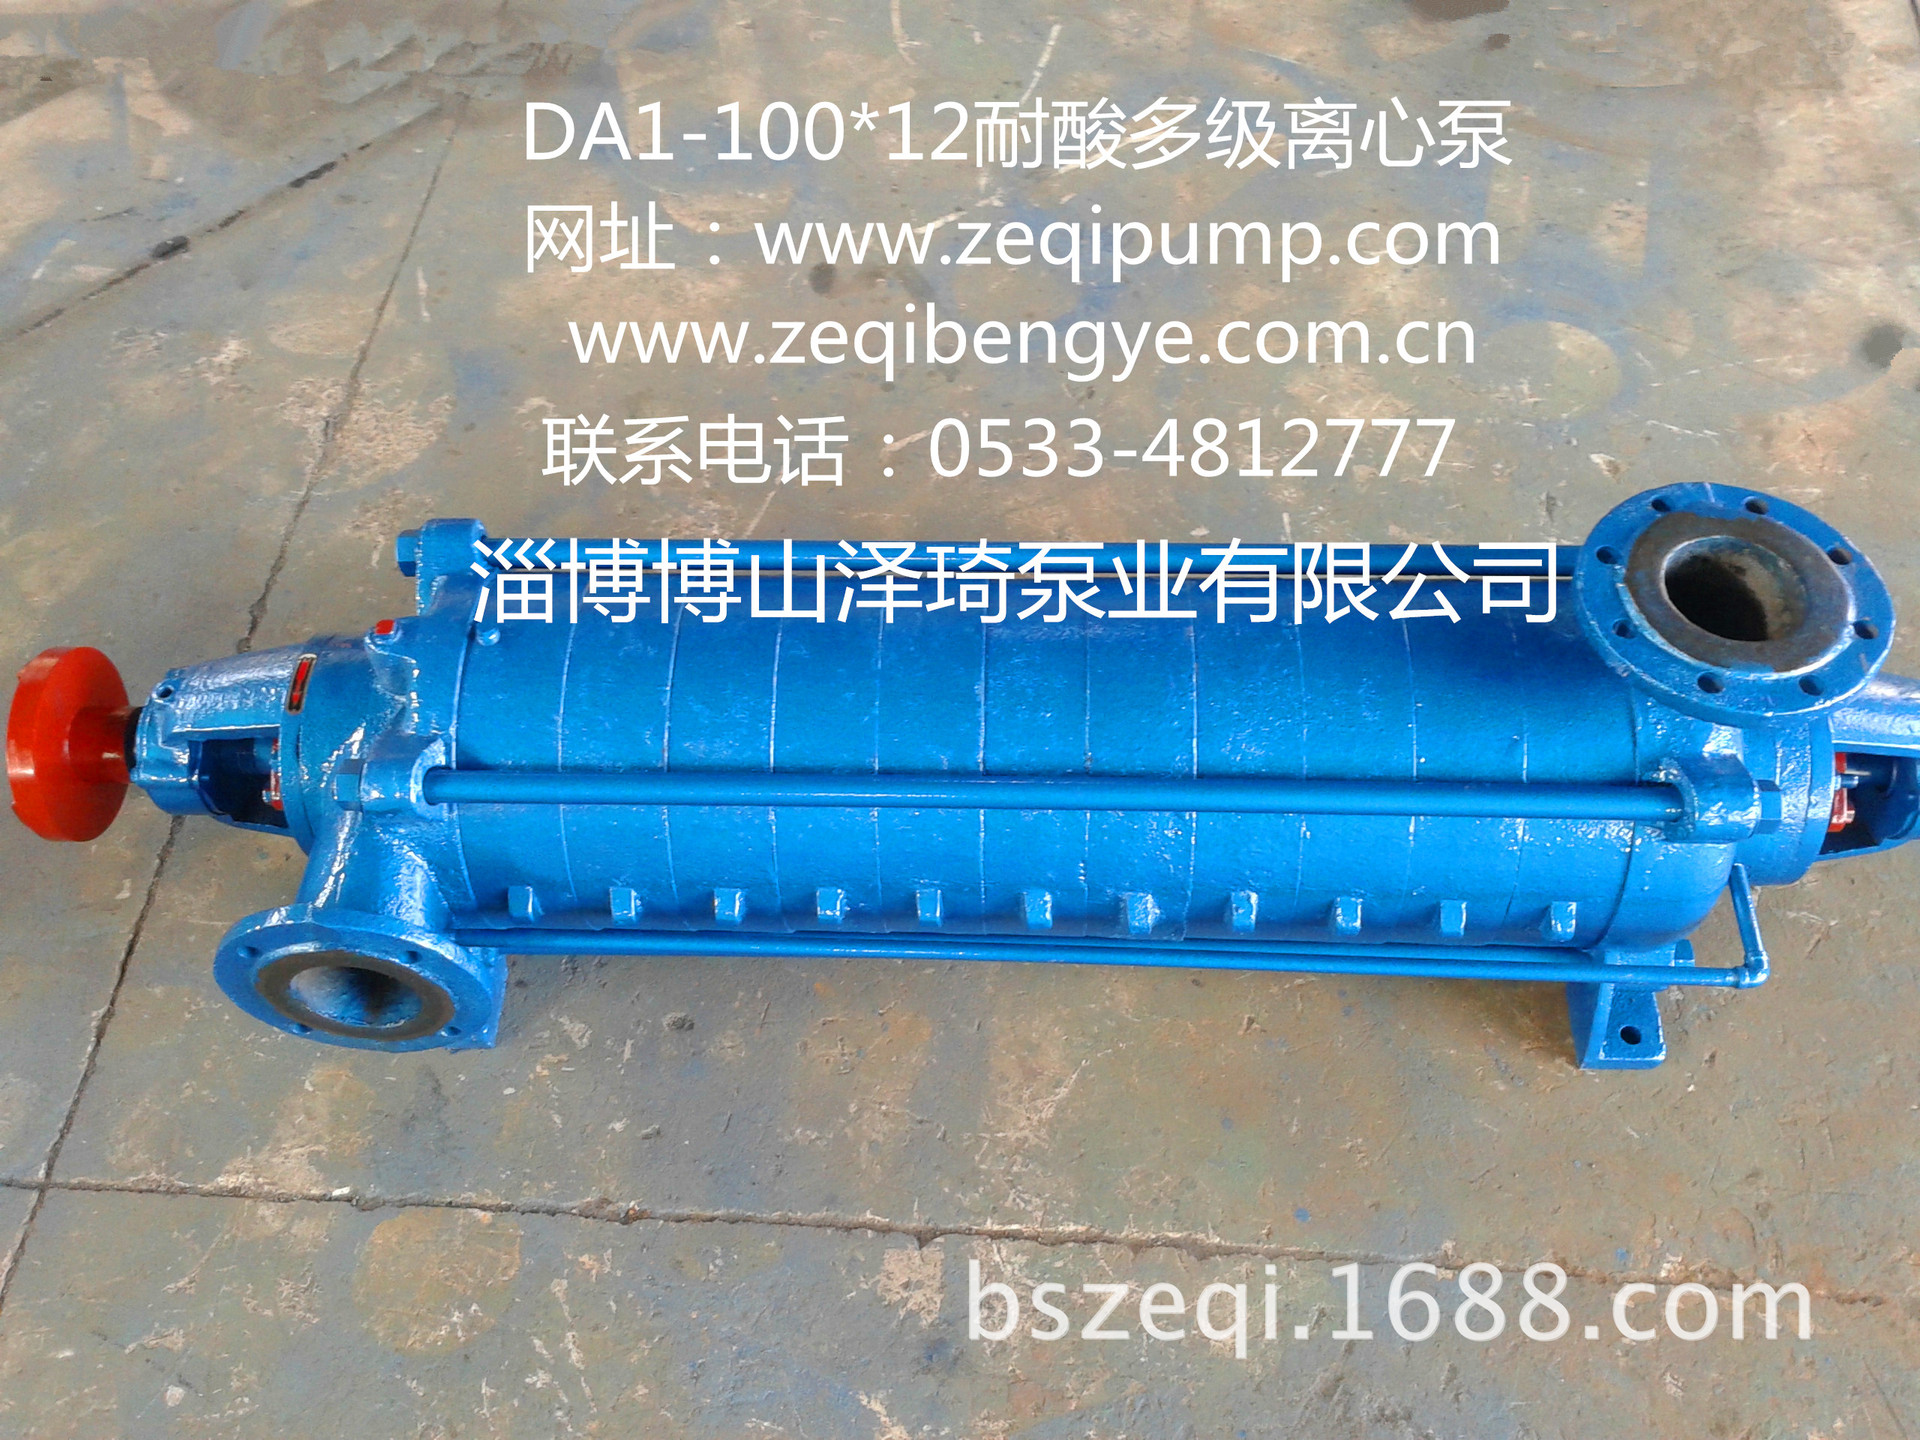 DA1-100耐酸泵